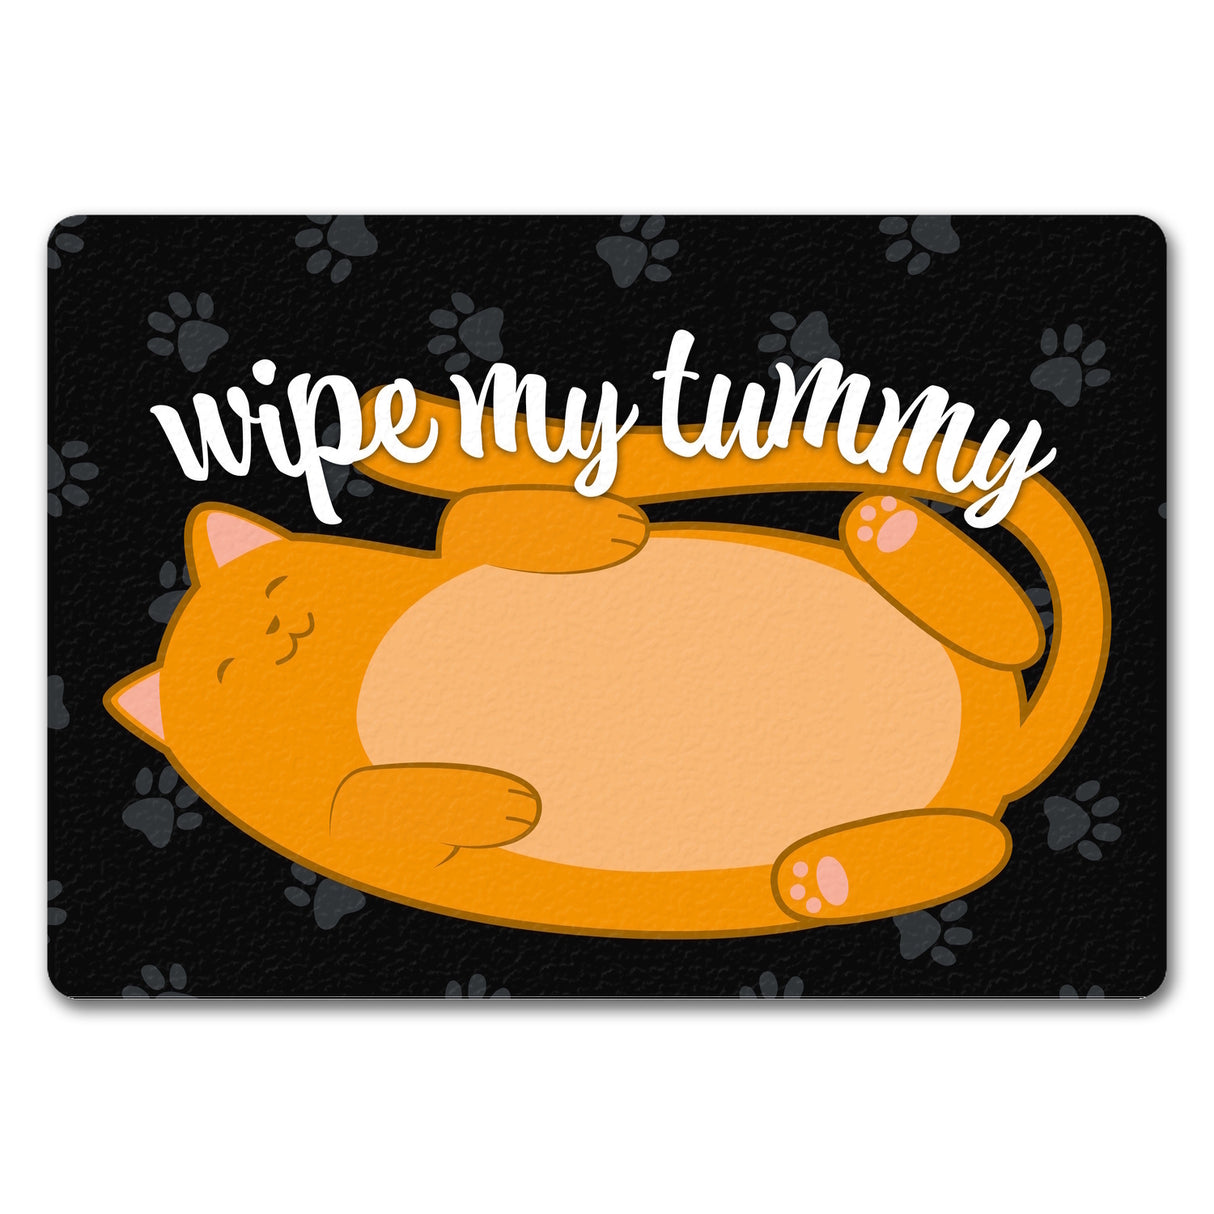 Wipe my tummy Katze Fußmatte in 35x50 cm und Spruch